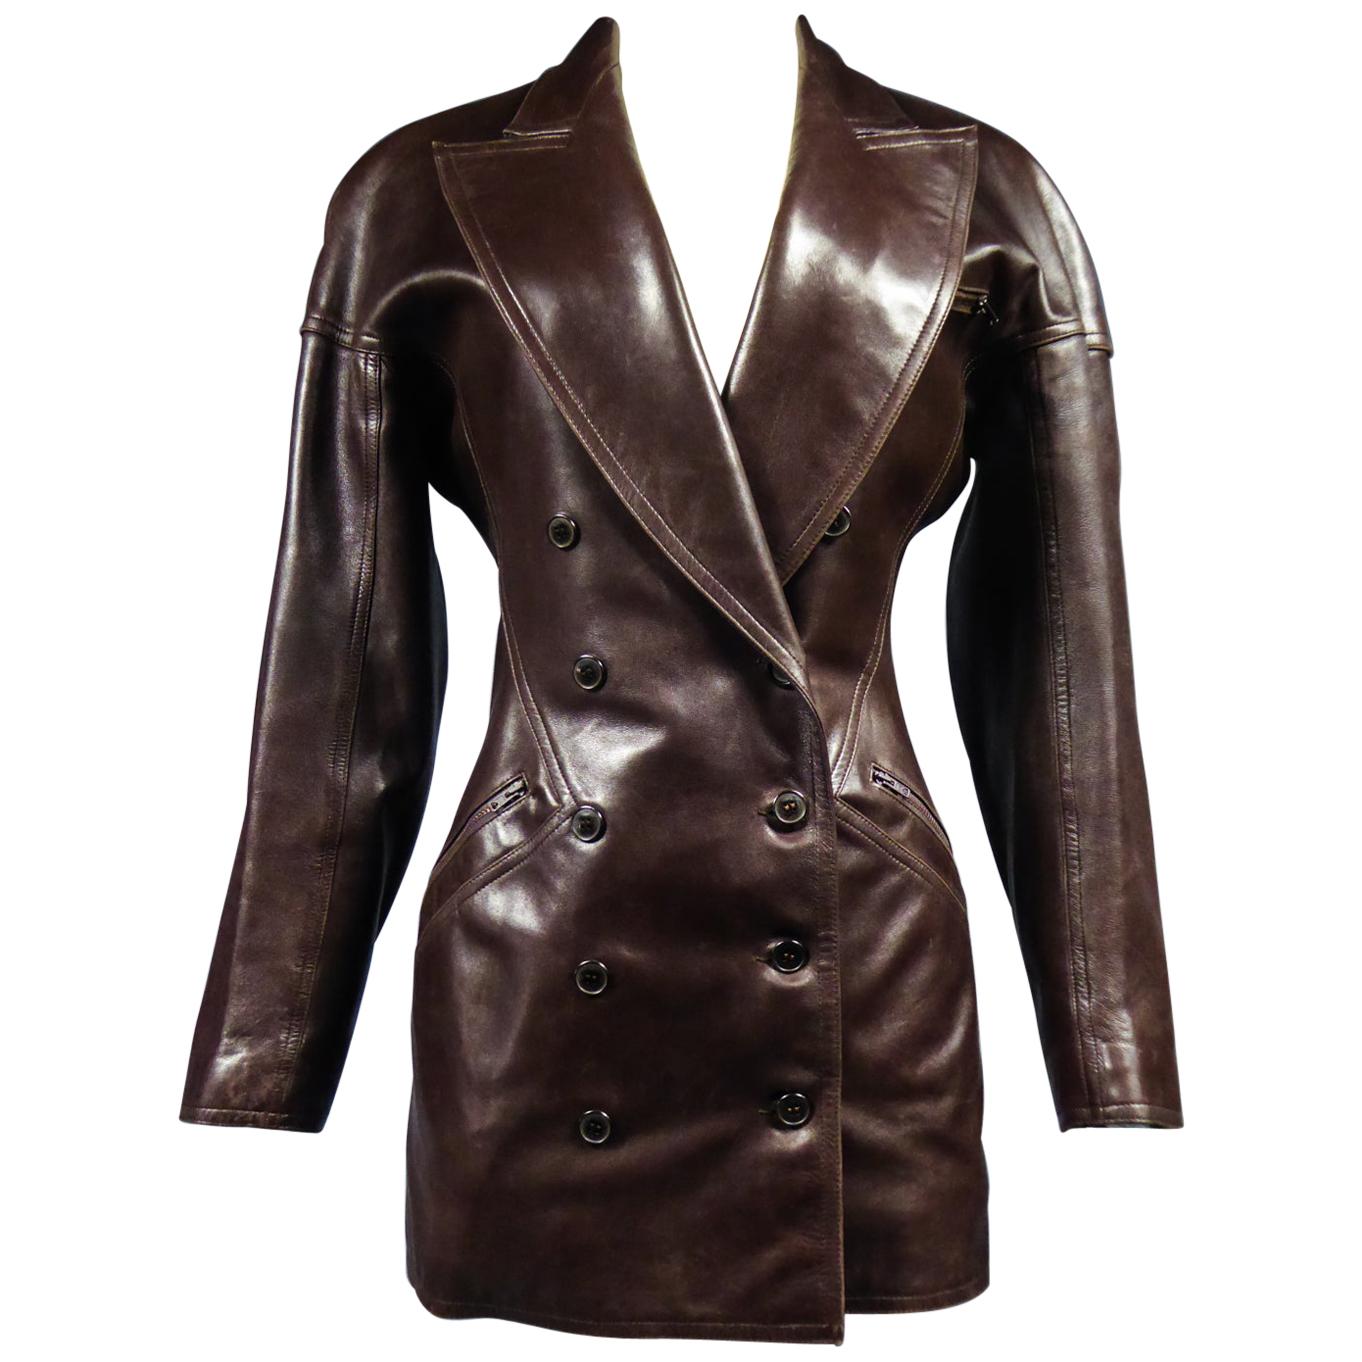 An Azzedine Alaïa Blazer Jacket in Leather Circa 1985-1990